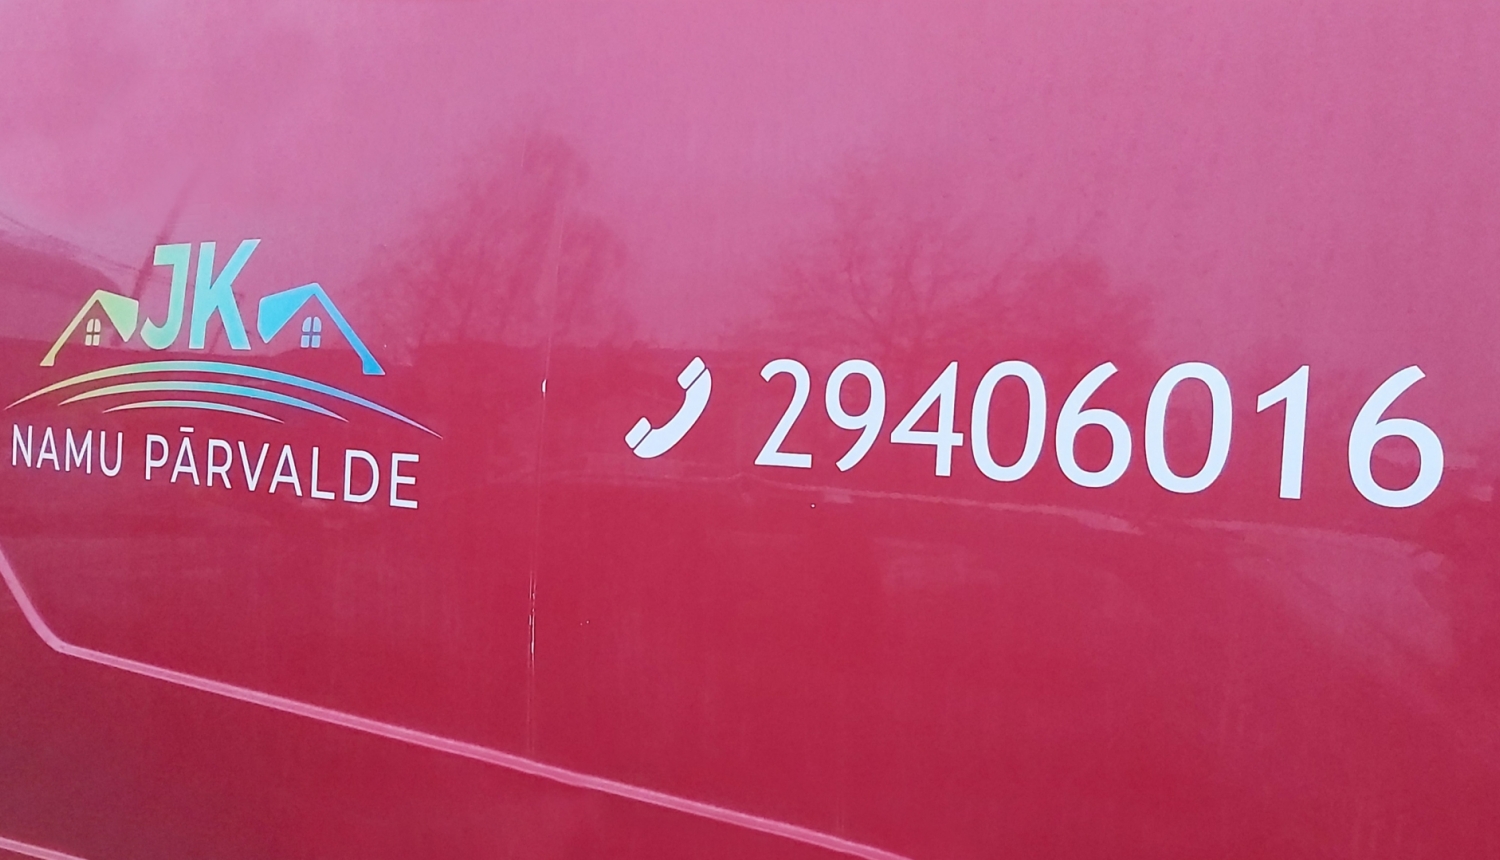 Tālruņa numurs uz sarkanas automašīnas sāna